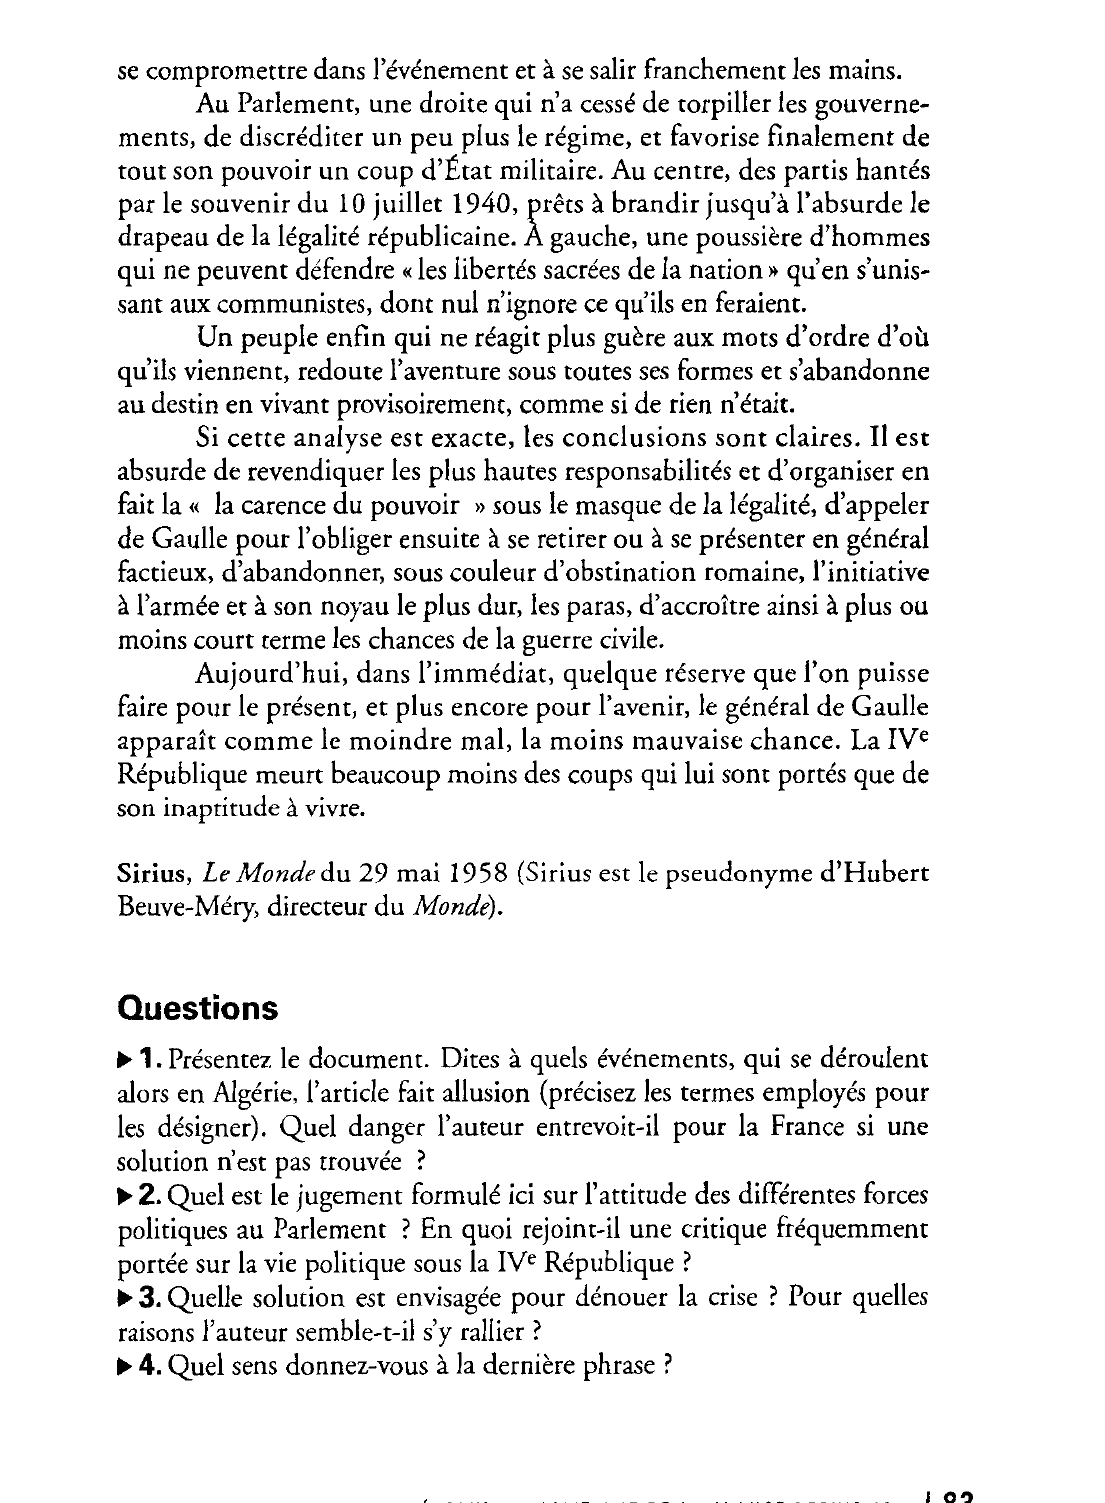 Prévisualisation du document L'opinion  de l'éditorialiste du journal Le Monde sur la fin de la IVe République.